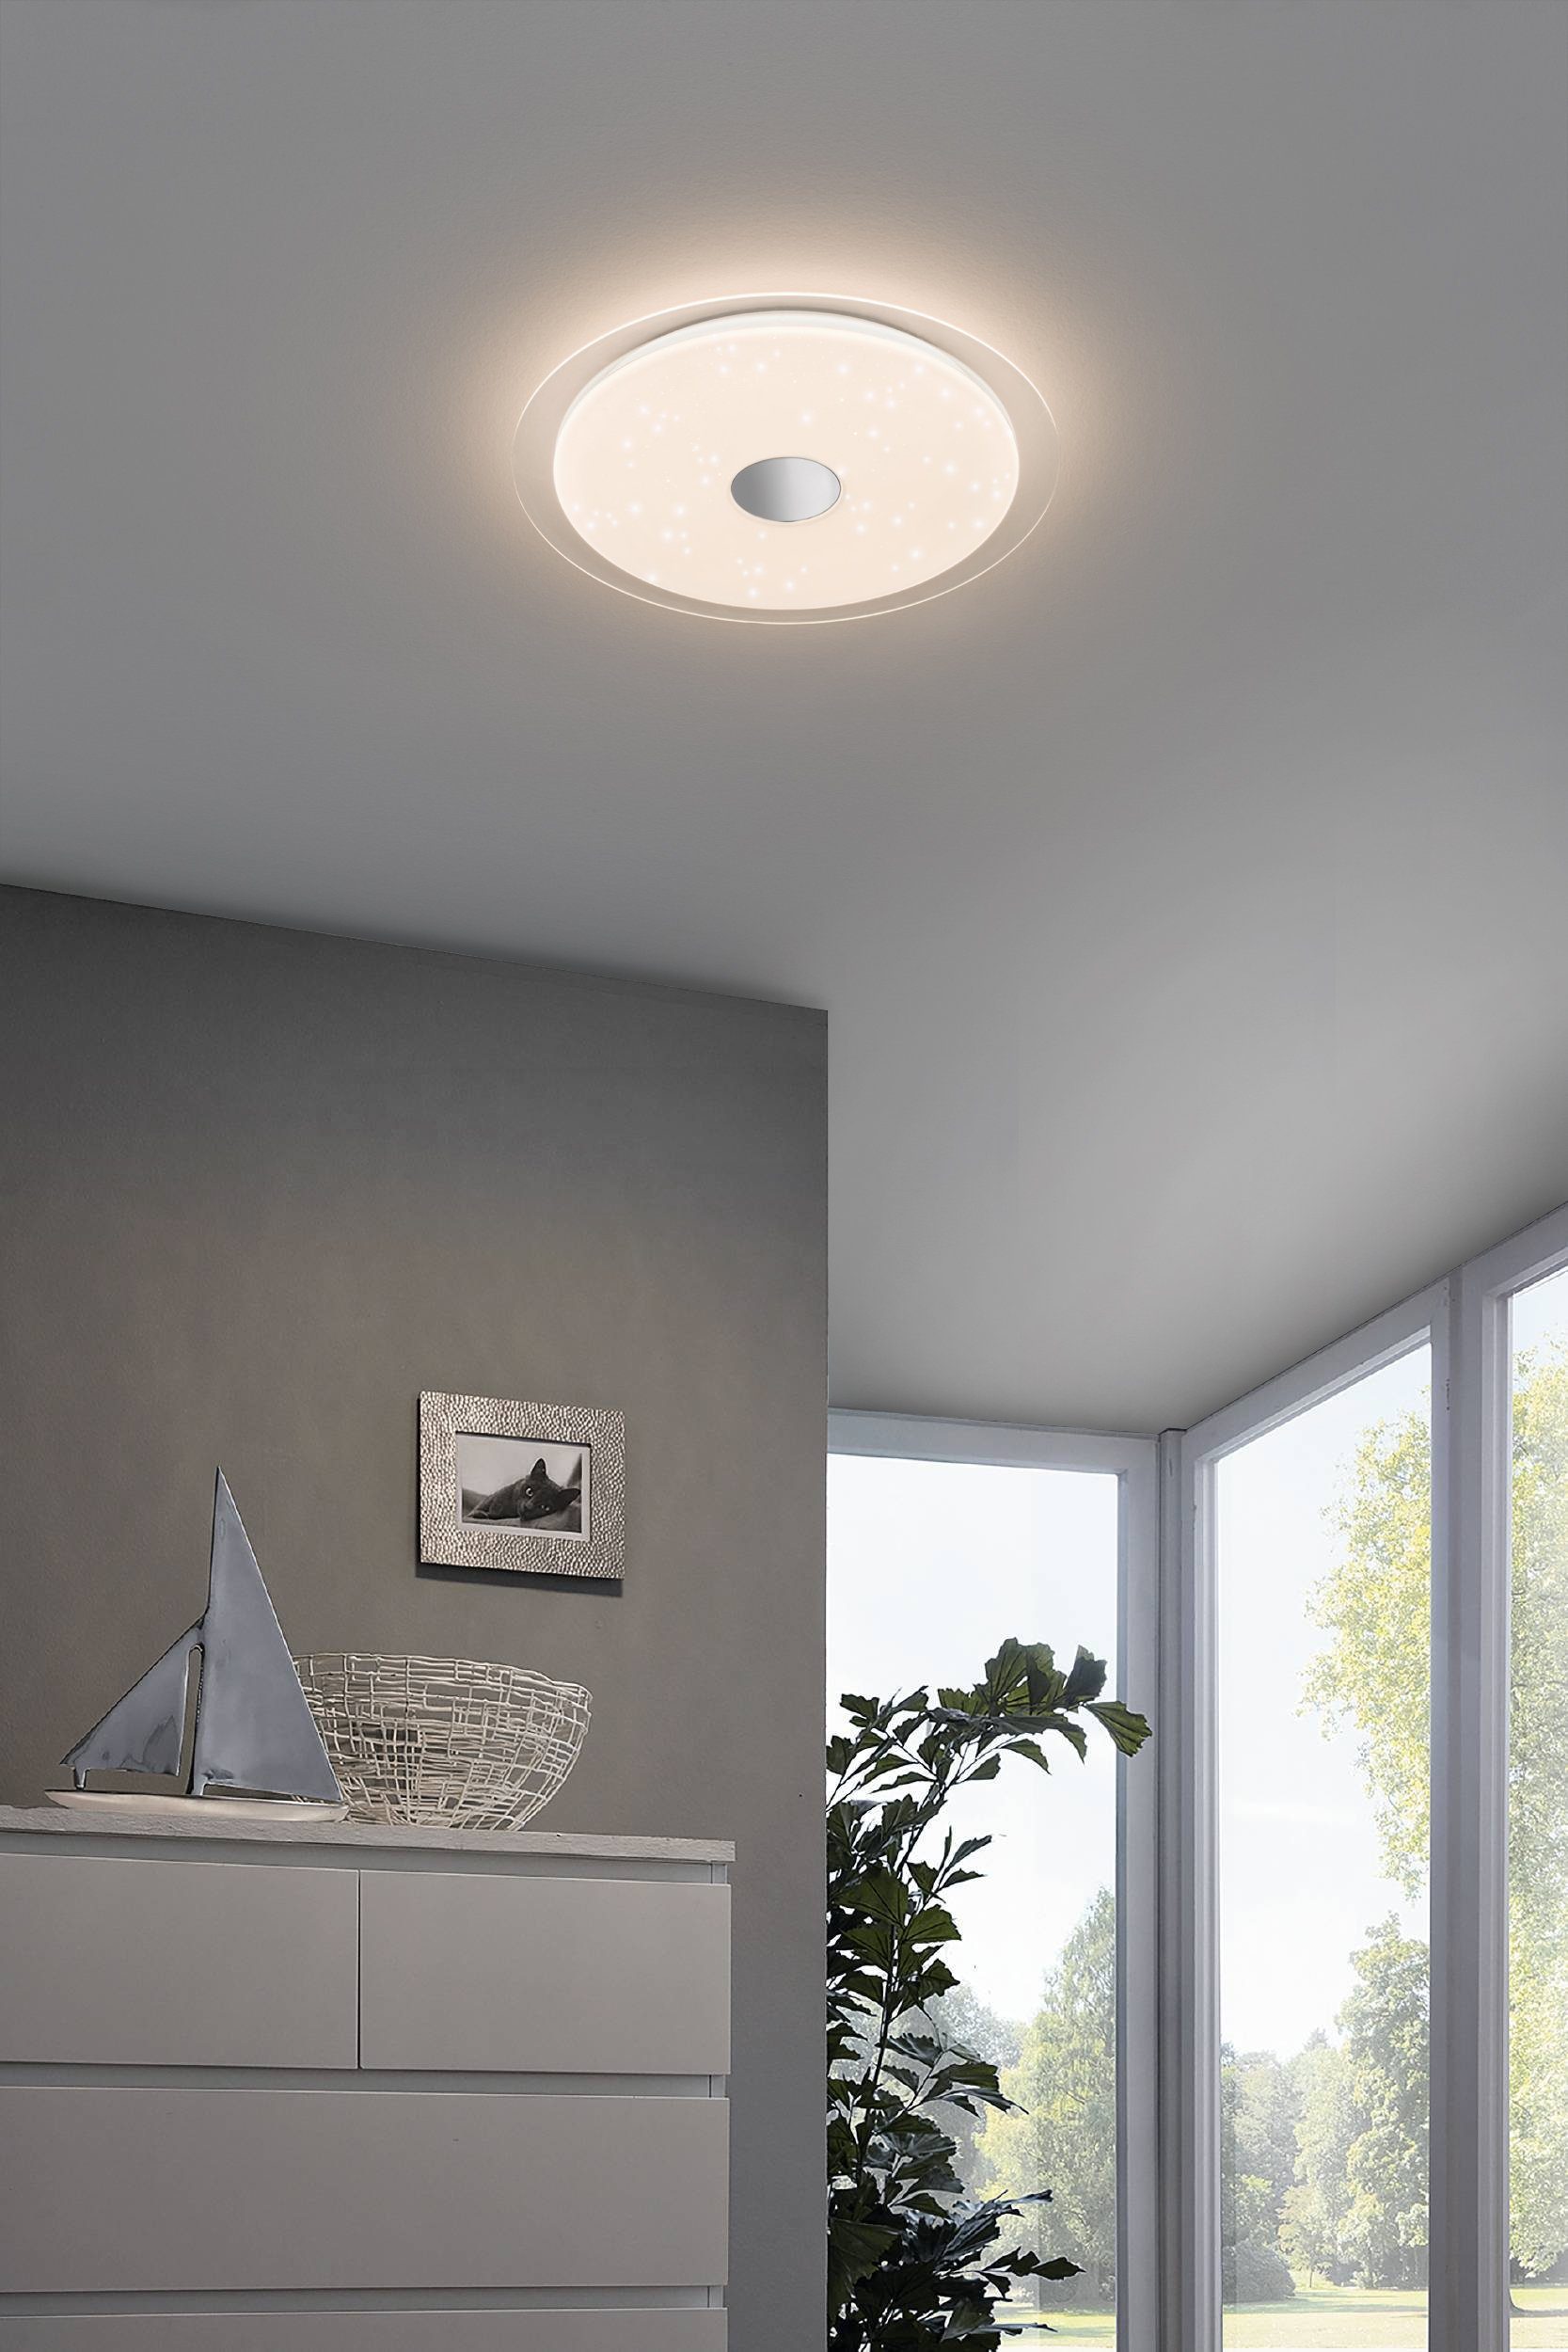 EGLO LED Deckenleuchte Igroka, Leuchtmittel Deckenlampe, Kristalleffekt, Wohnzimmerlampe Wandlampe mit inklusive